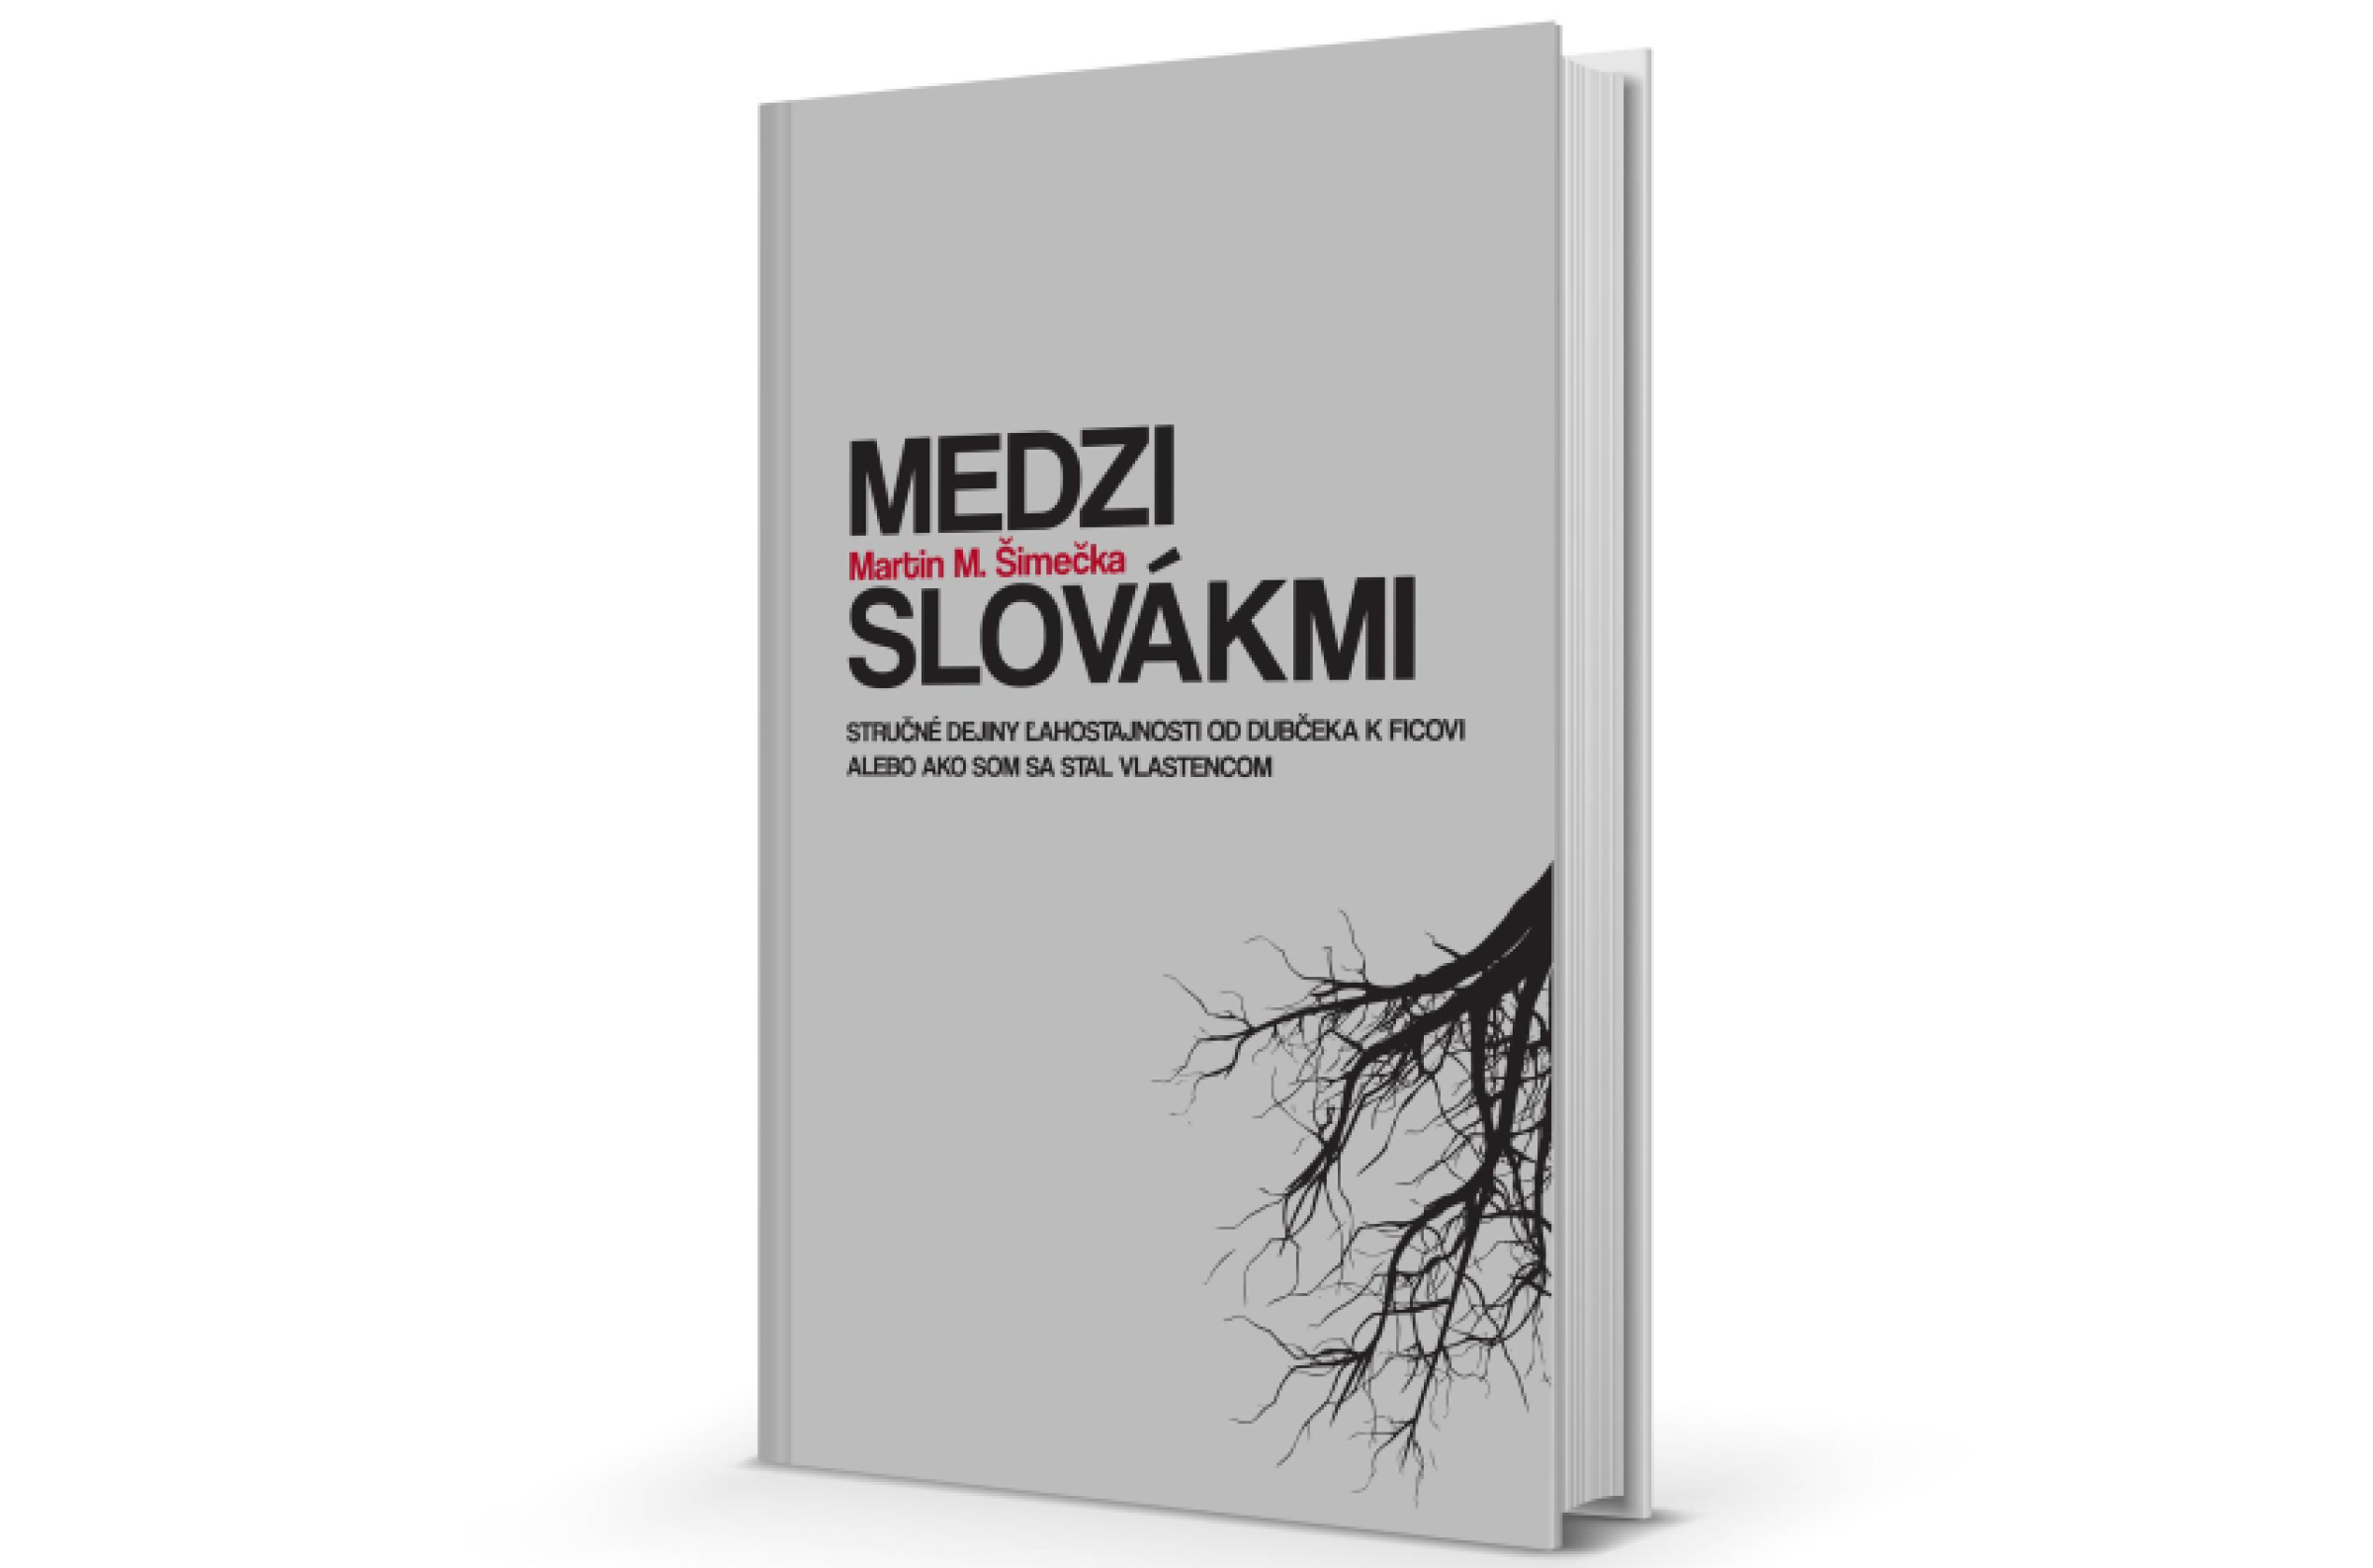 Martin M. Šimečka: Medzi Slovákmi - prvých 100 kusov s podpisom autora